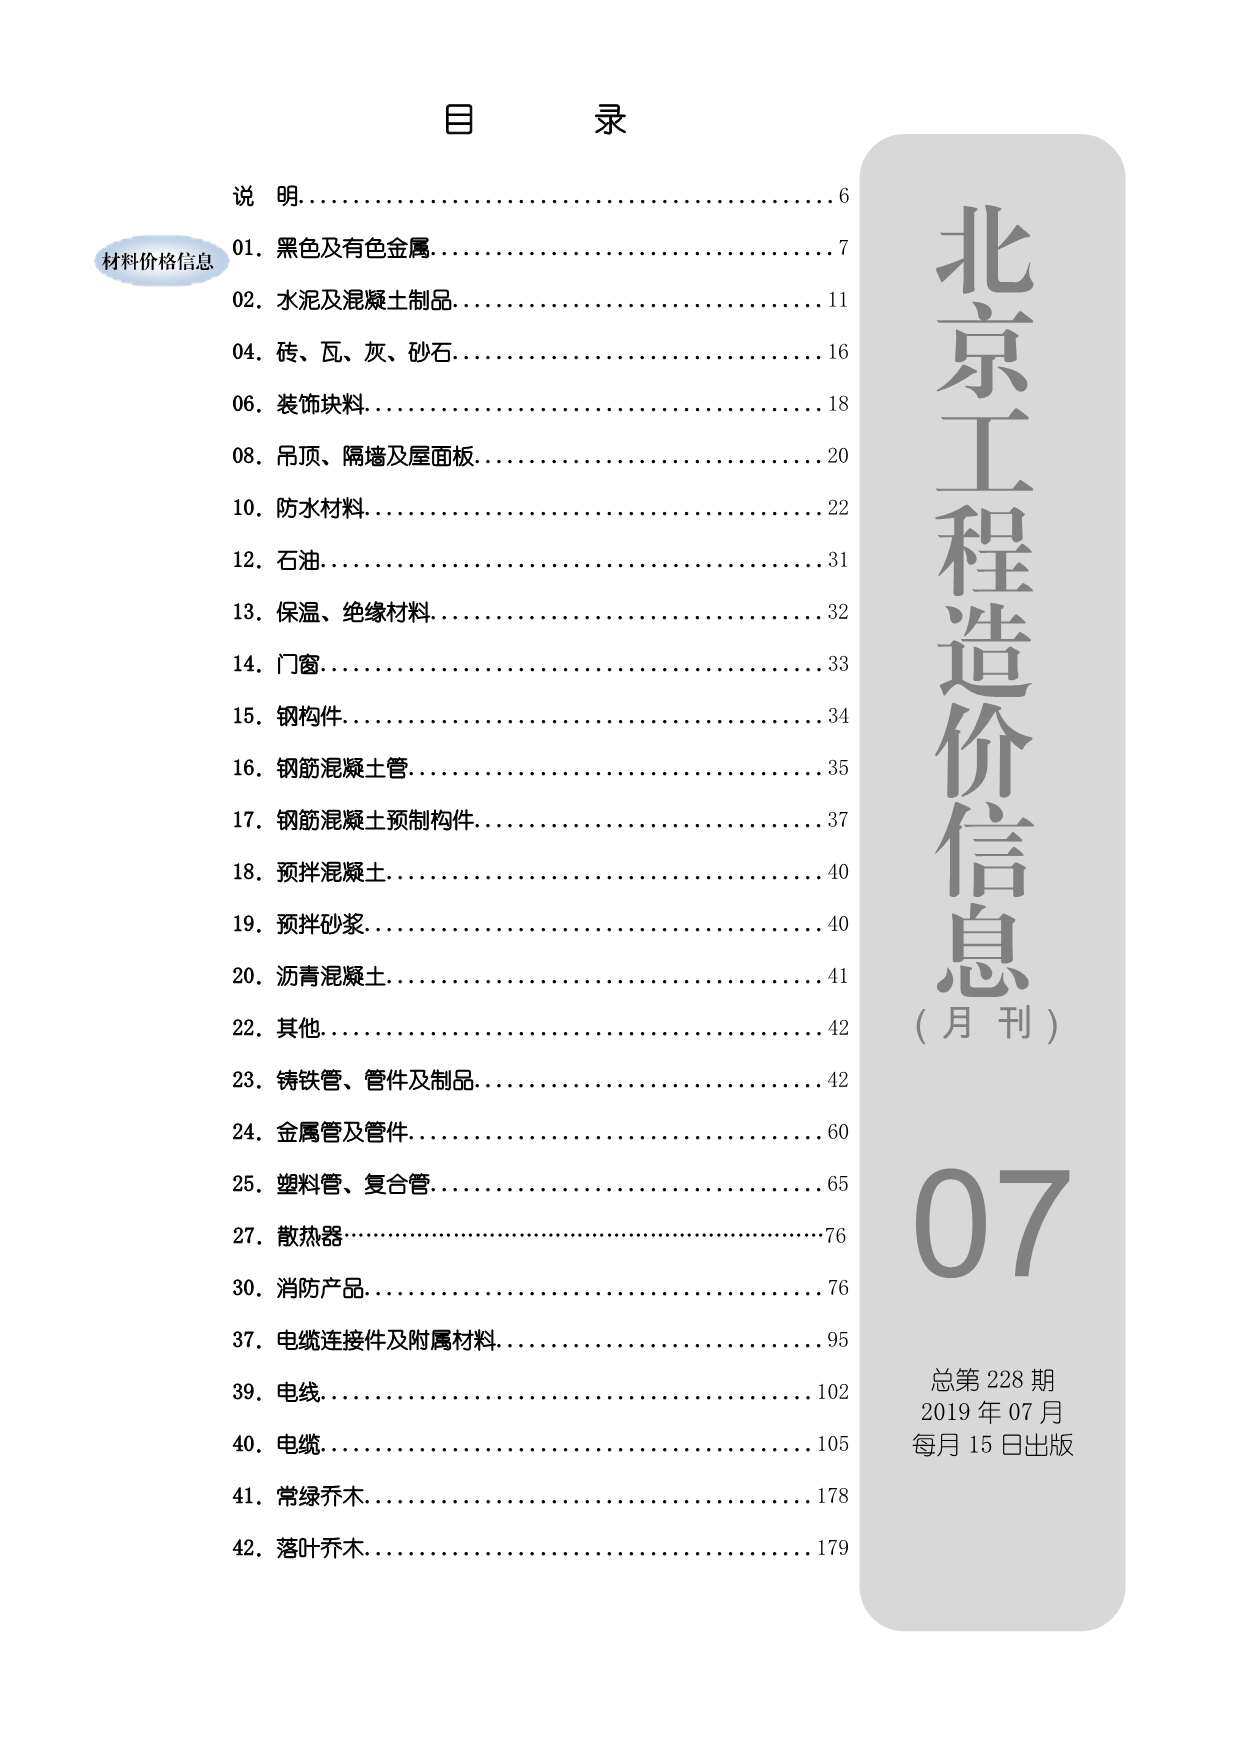 北京市2019年7月工程造价信息期刊